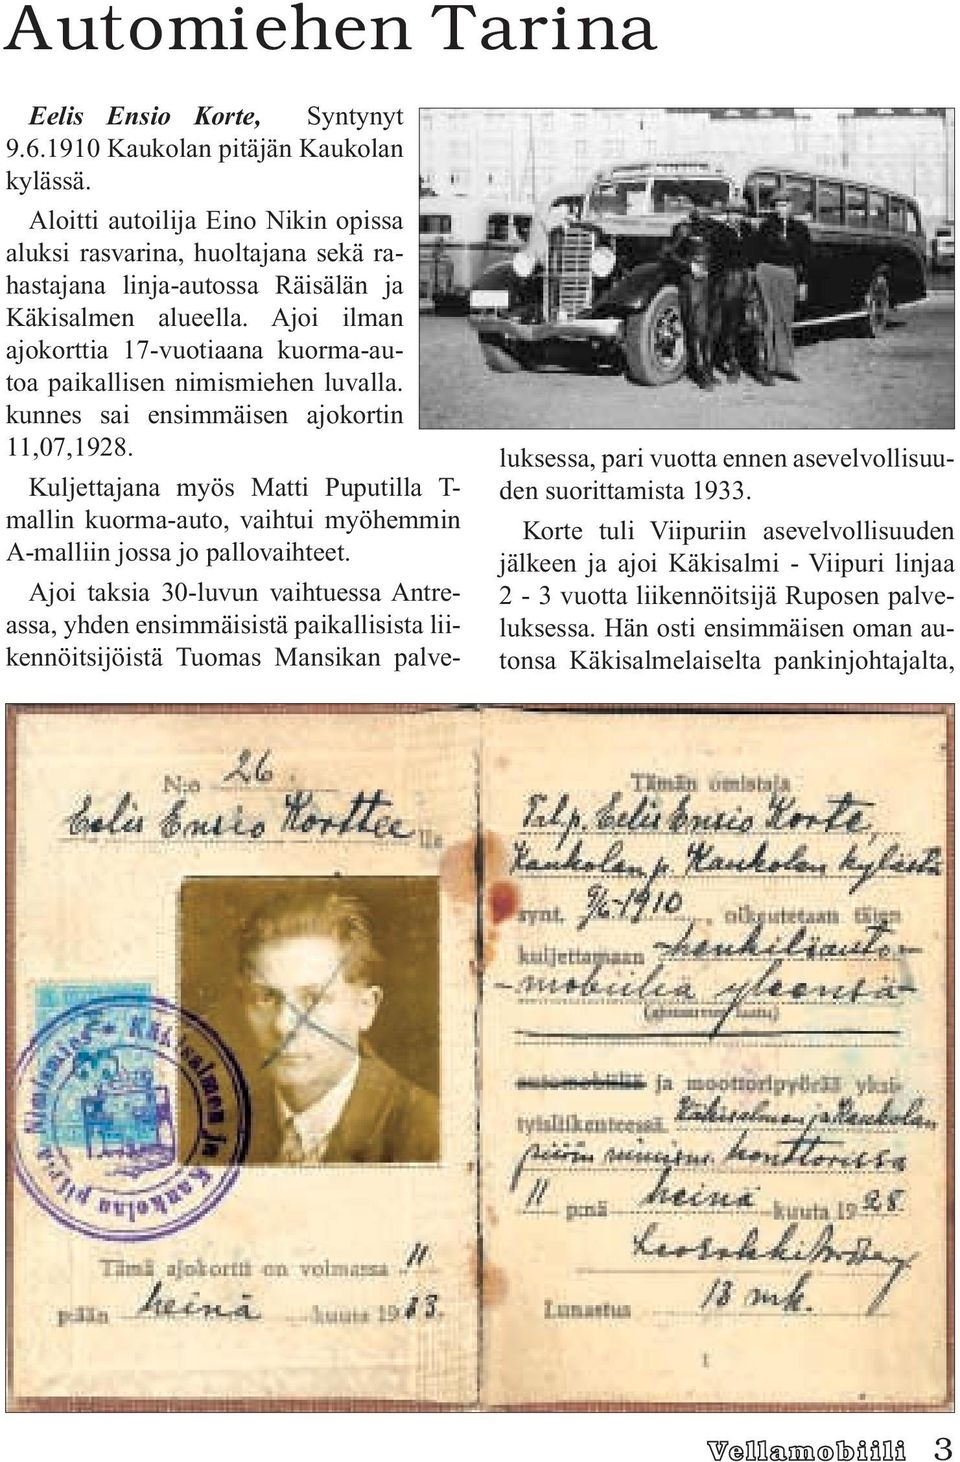 Ajoi ilman ajokorttia 17-vuotiaana kuorma-autoa paikallisen nimismiehen luvalla. kunnes sai ensimmäisen ajokortin 11,07,1928.